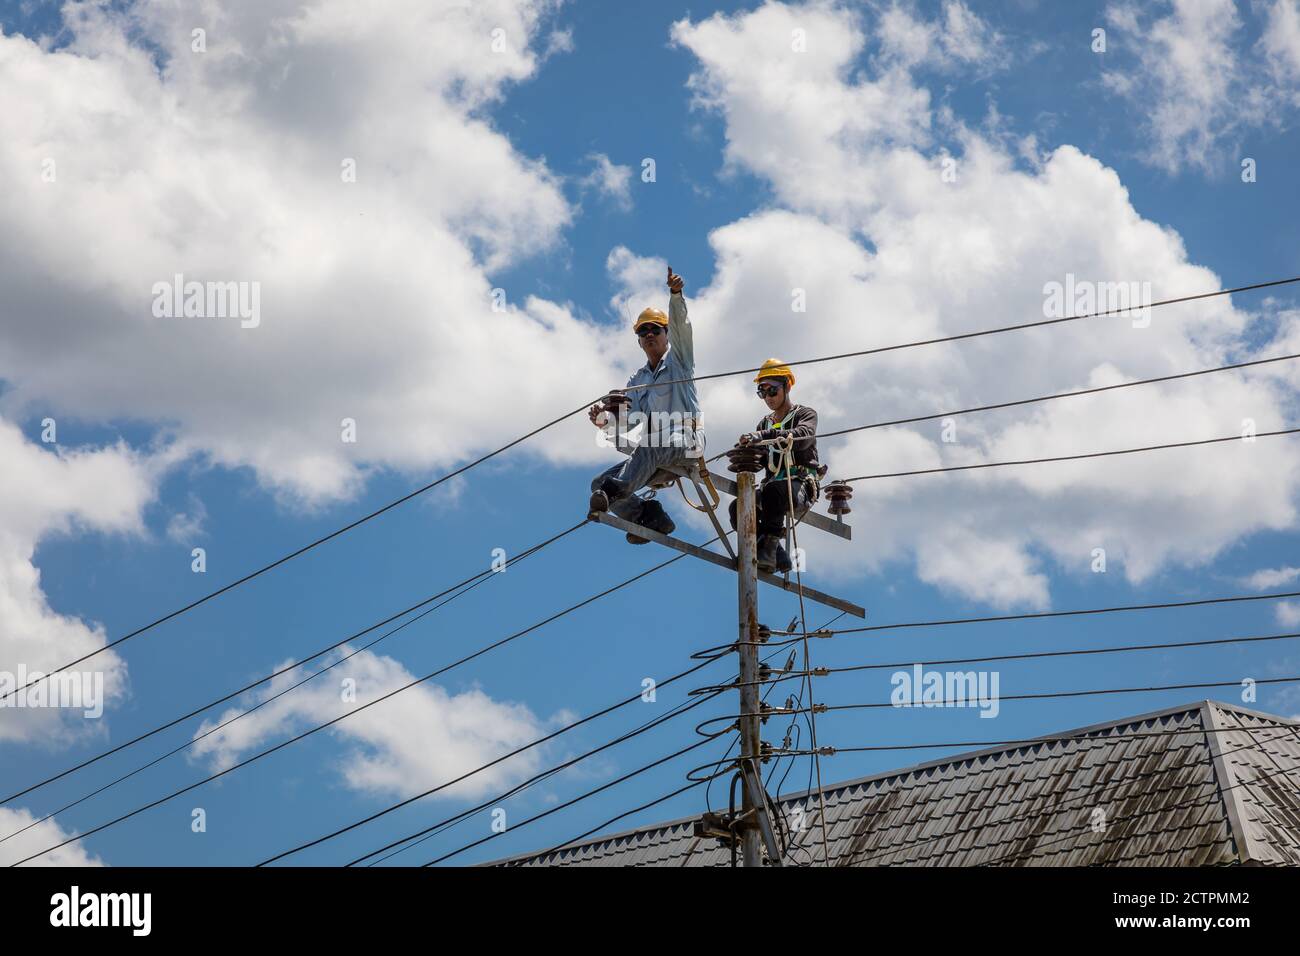 Tenhilan, Sabah, Malesia: Due linemen che fanno lavori di riparazione su un pilone ad alta tensione a Tengilan Foto Stock